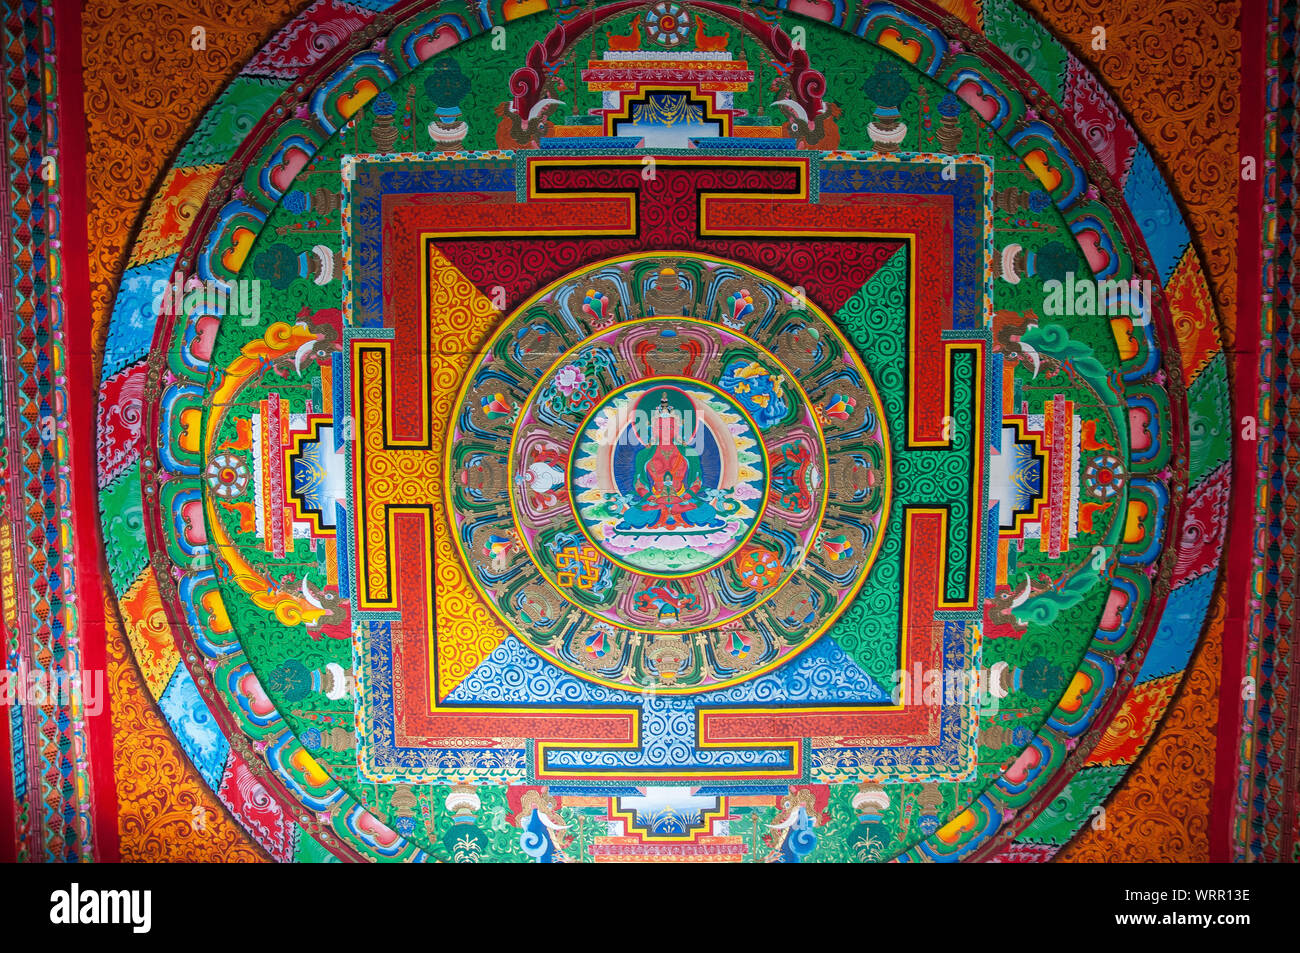 Murale Mandala à Sumtsenling Sōngzànlín ou Ganden, un monastère bouddhiste tibétain à l'extérieur de Shangri La ou Zhongdian, Yunnan, Chine Banque D'Images